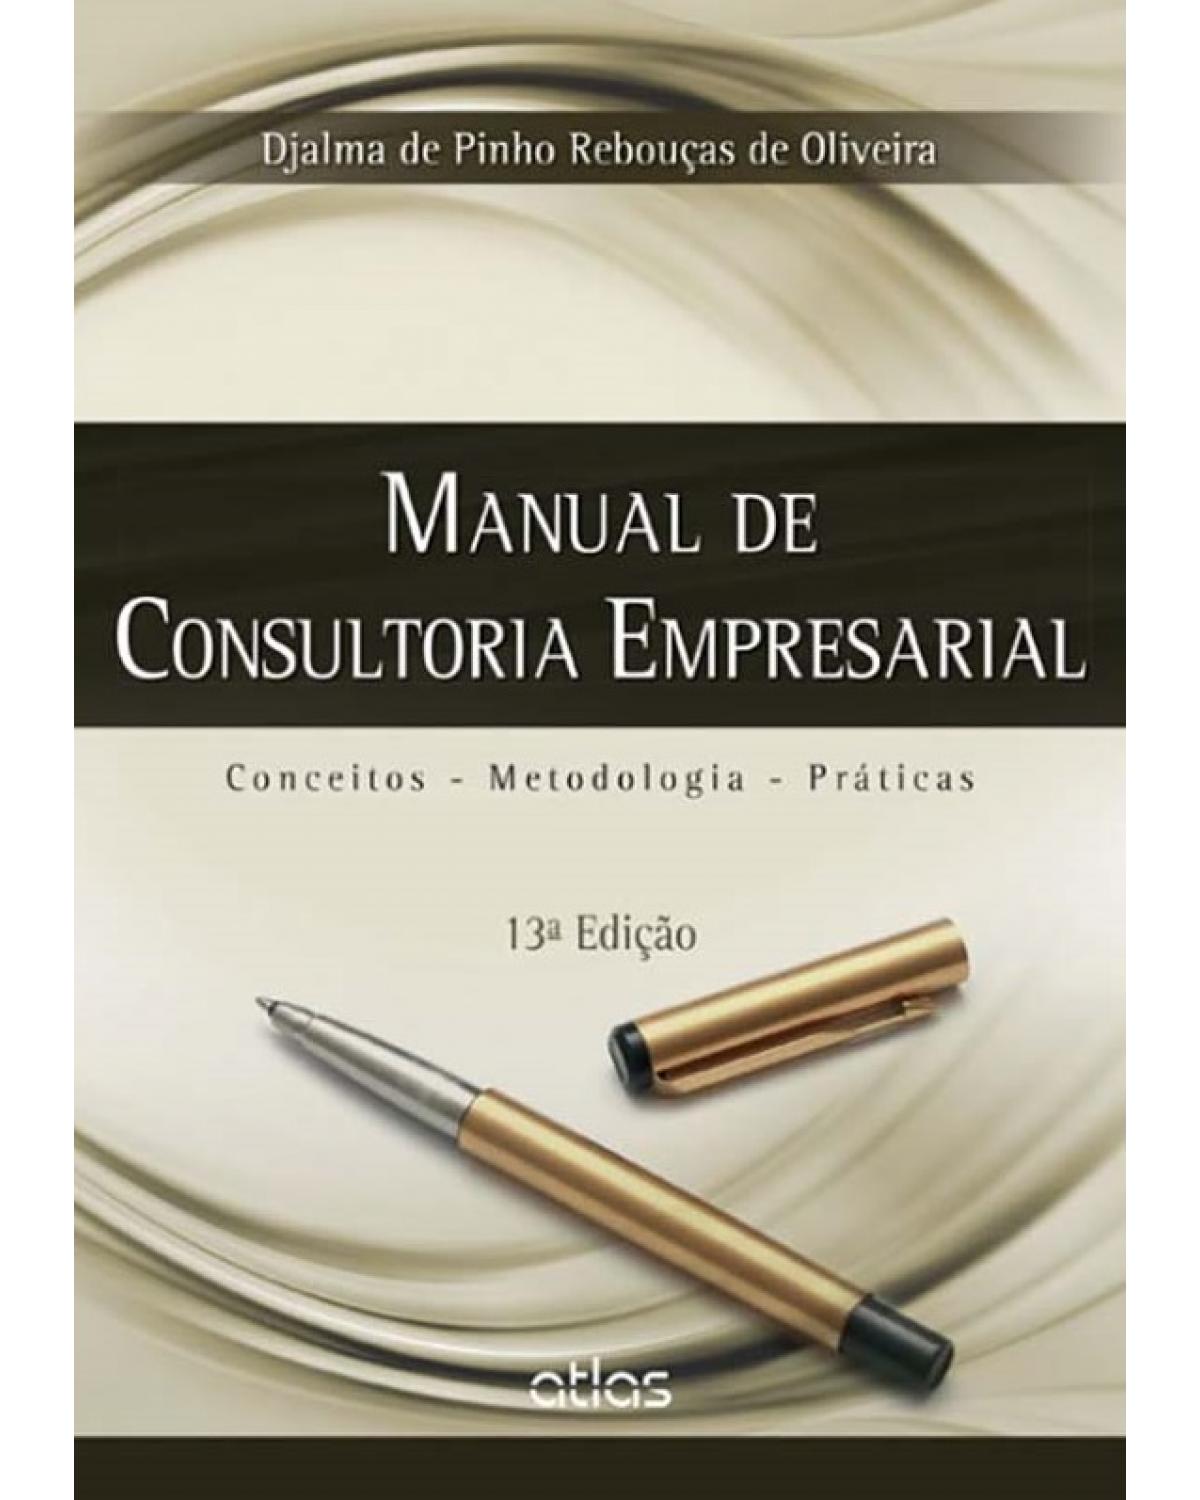 Manual de consultoria empresarial - Conceitos, metodologia, práticas - 13ª Edição | 2015